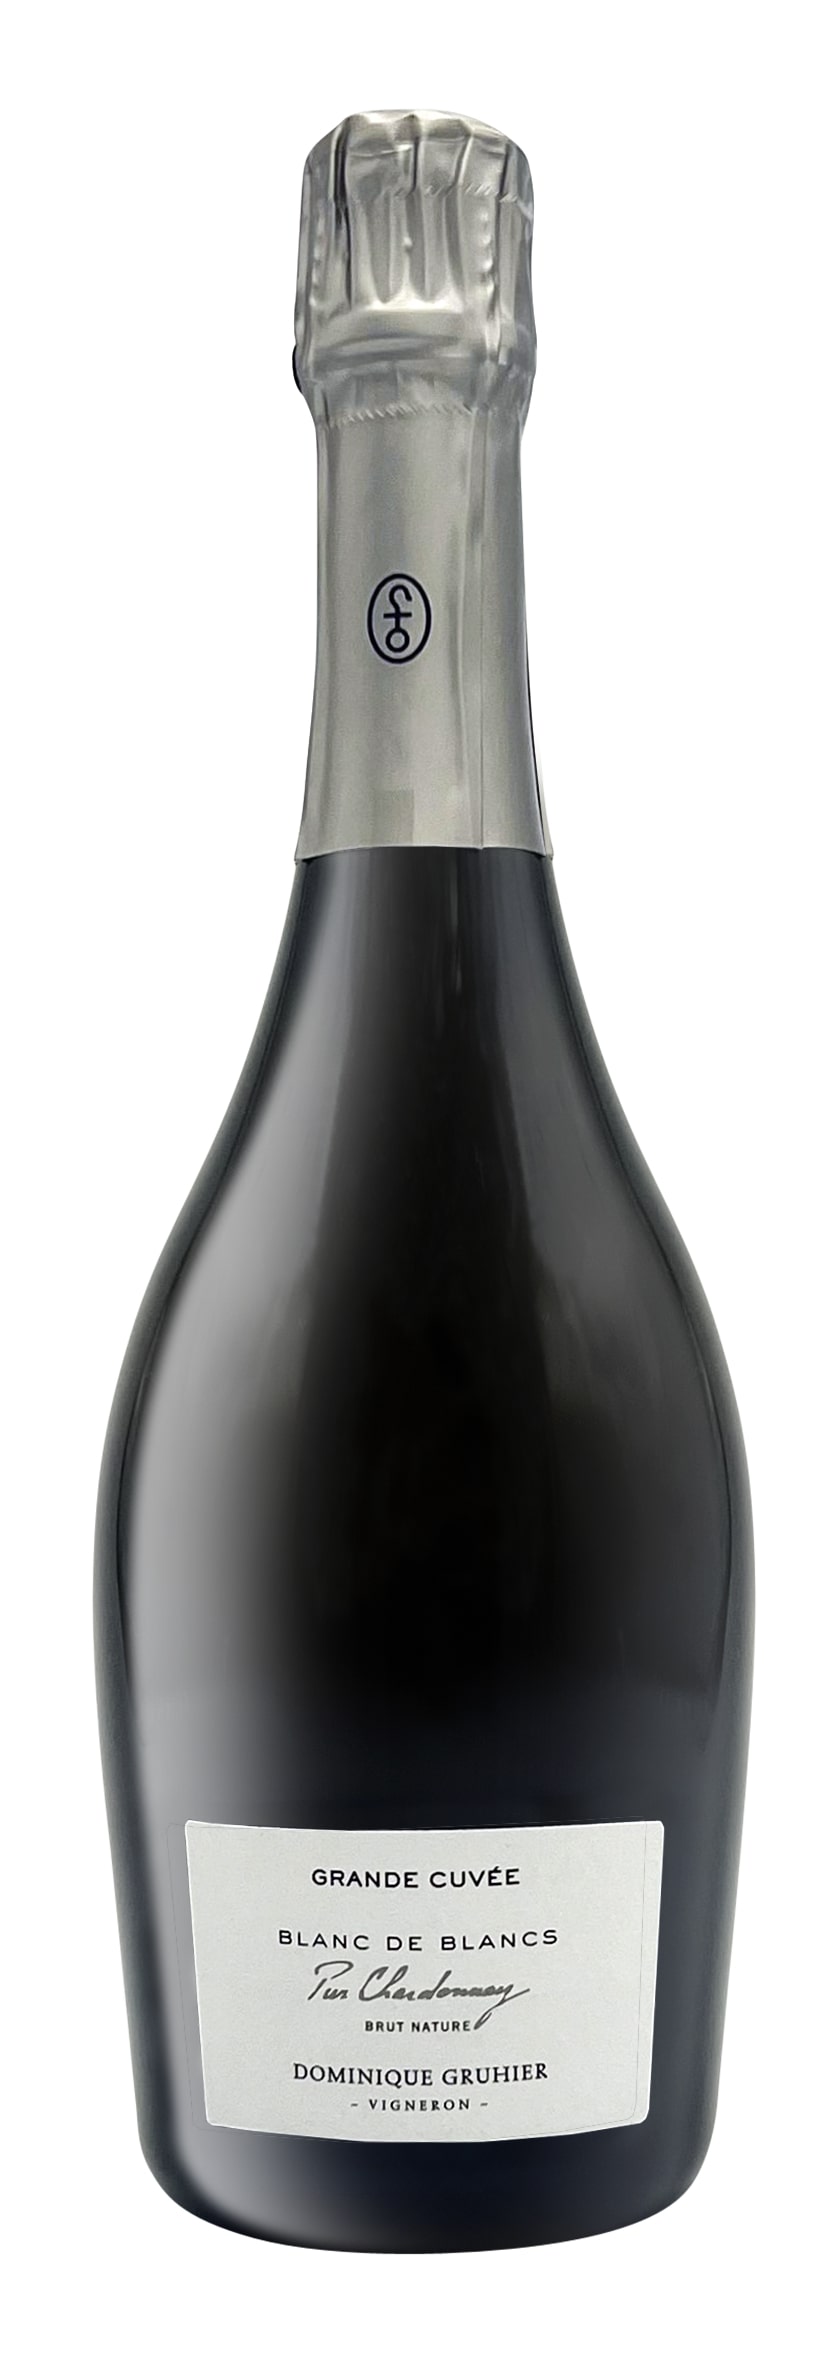 Crémant de Bourgogne AOC Pur Chardonnay Blanc de Blancs Grande Cuvée Brut Nature 2016